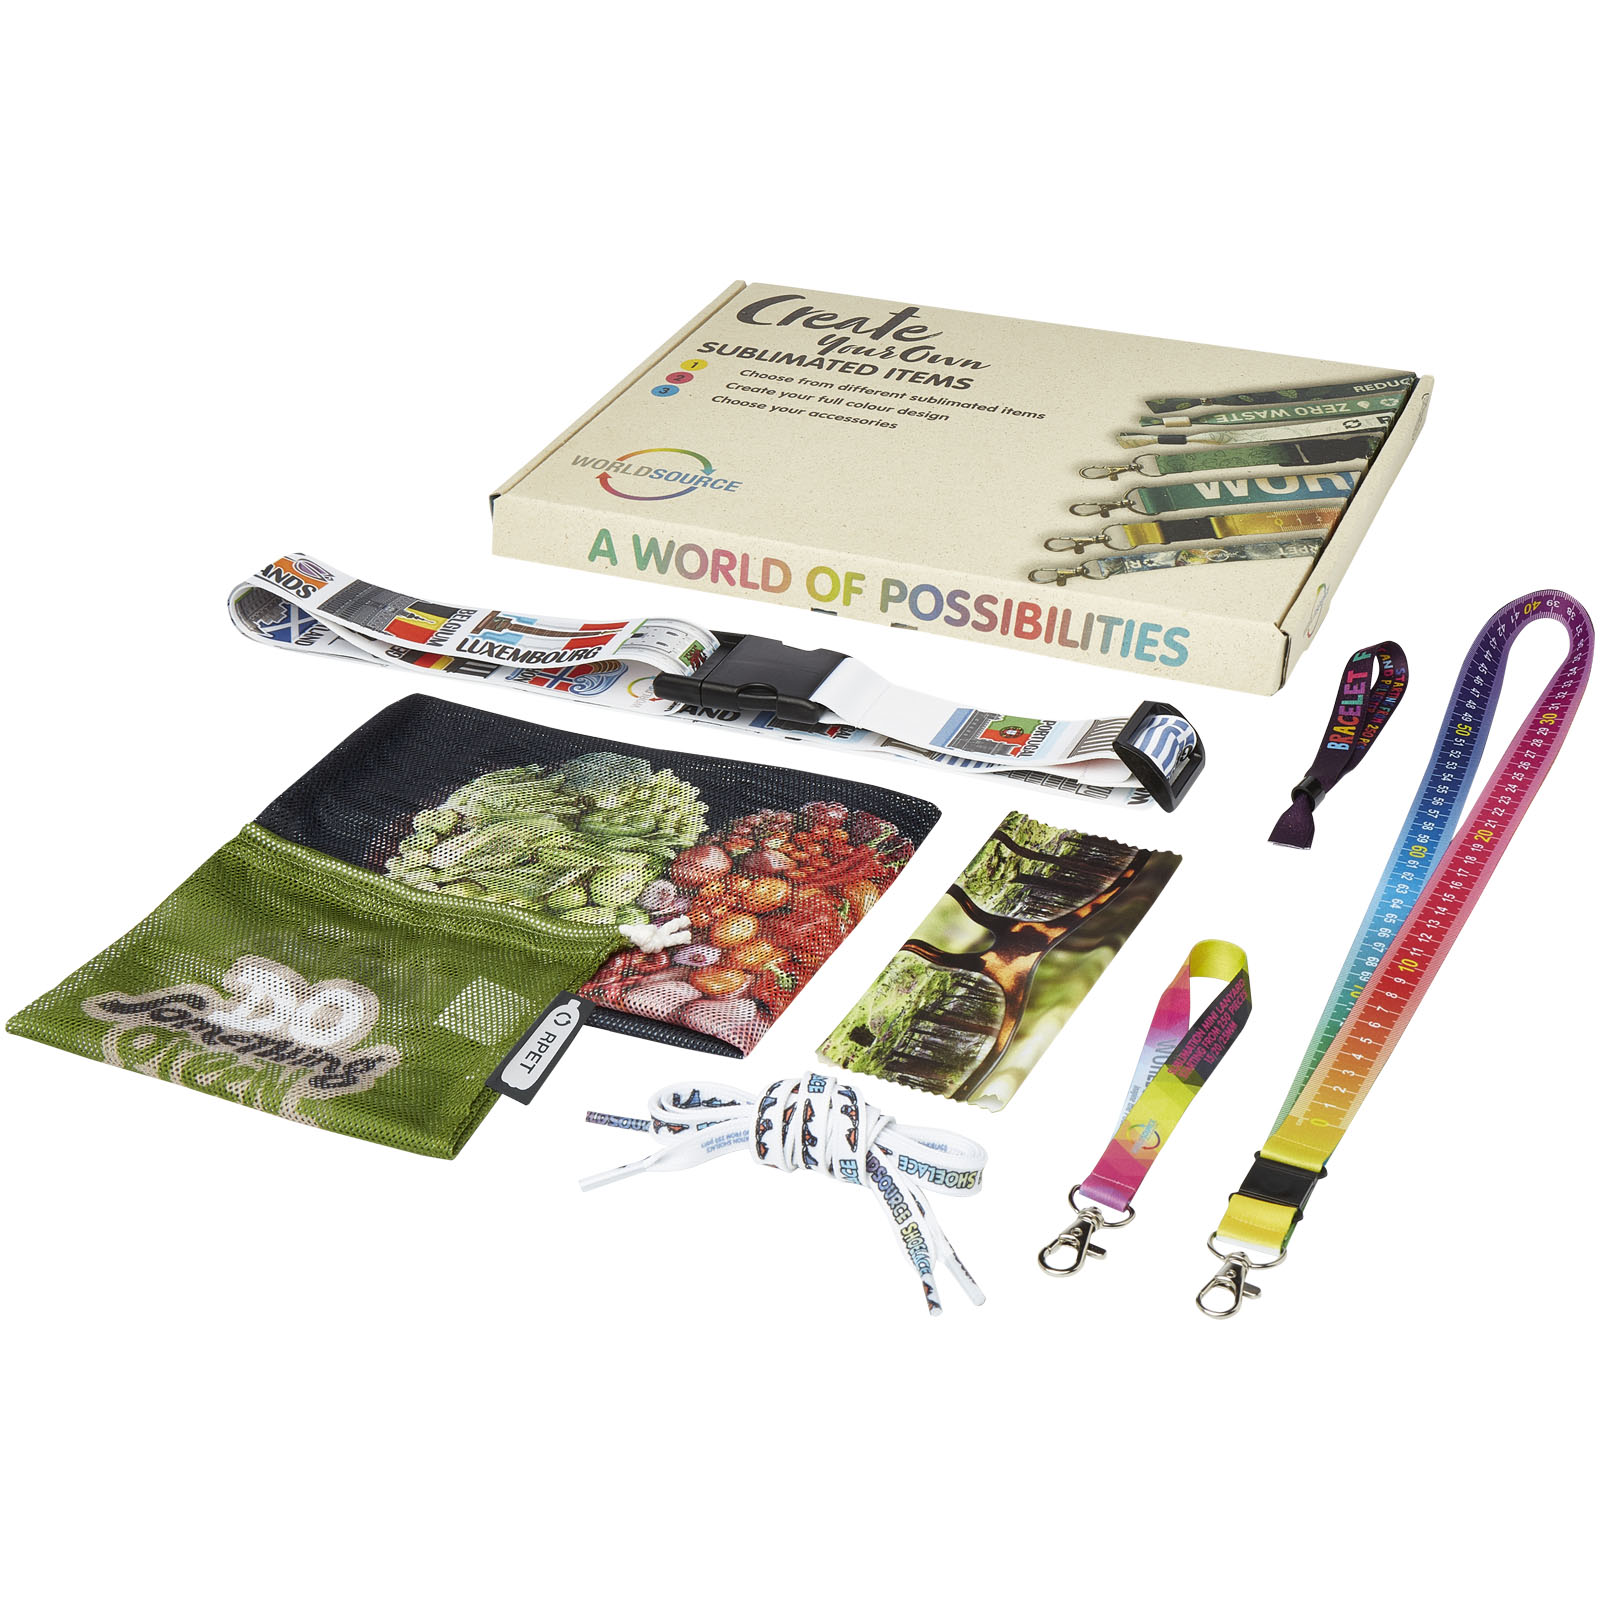 Kit d'échantillons de sublimation avec sacs de légumes et accessoires - Bourneau